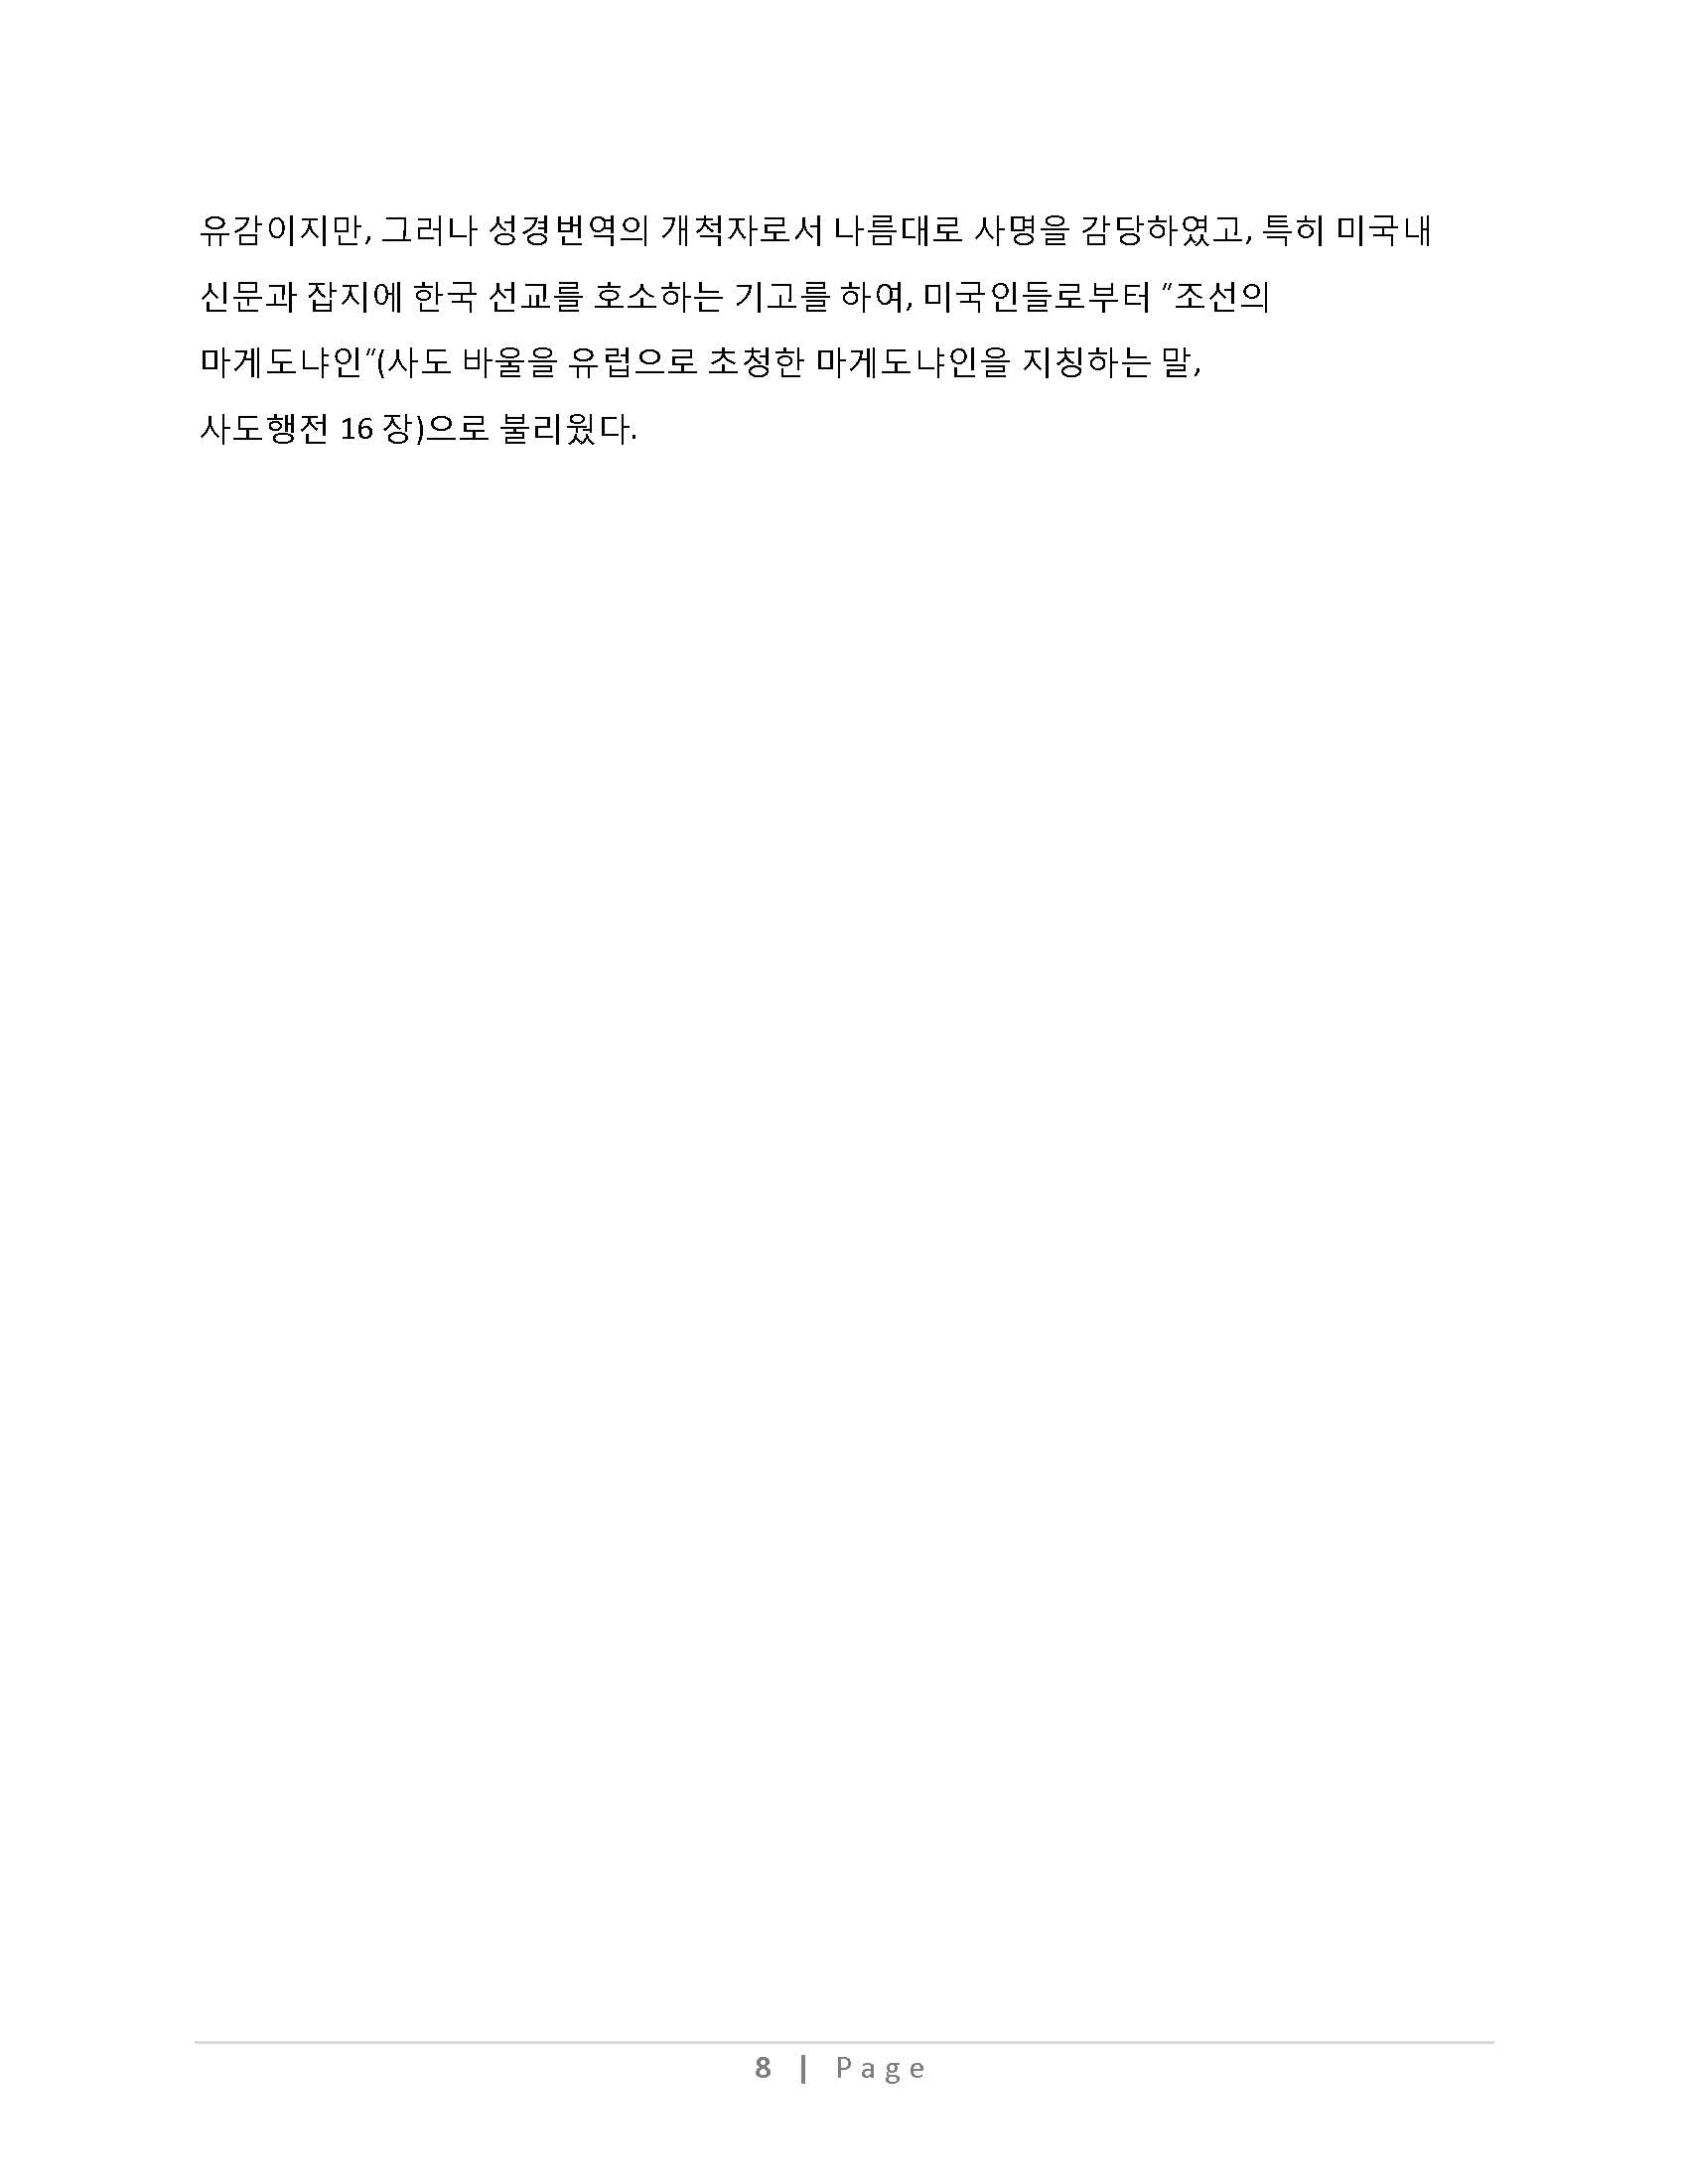 한국성경 번역의 역사_Page_15_Page_08.jpg